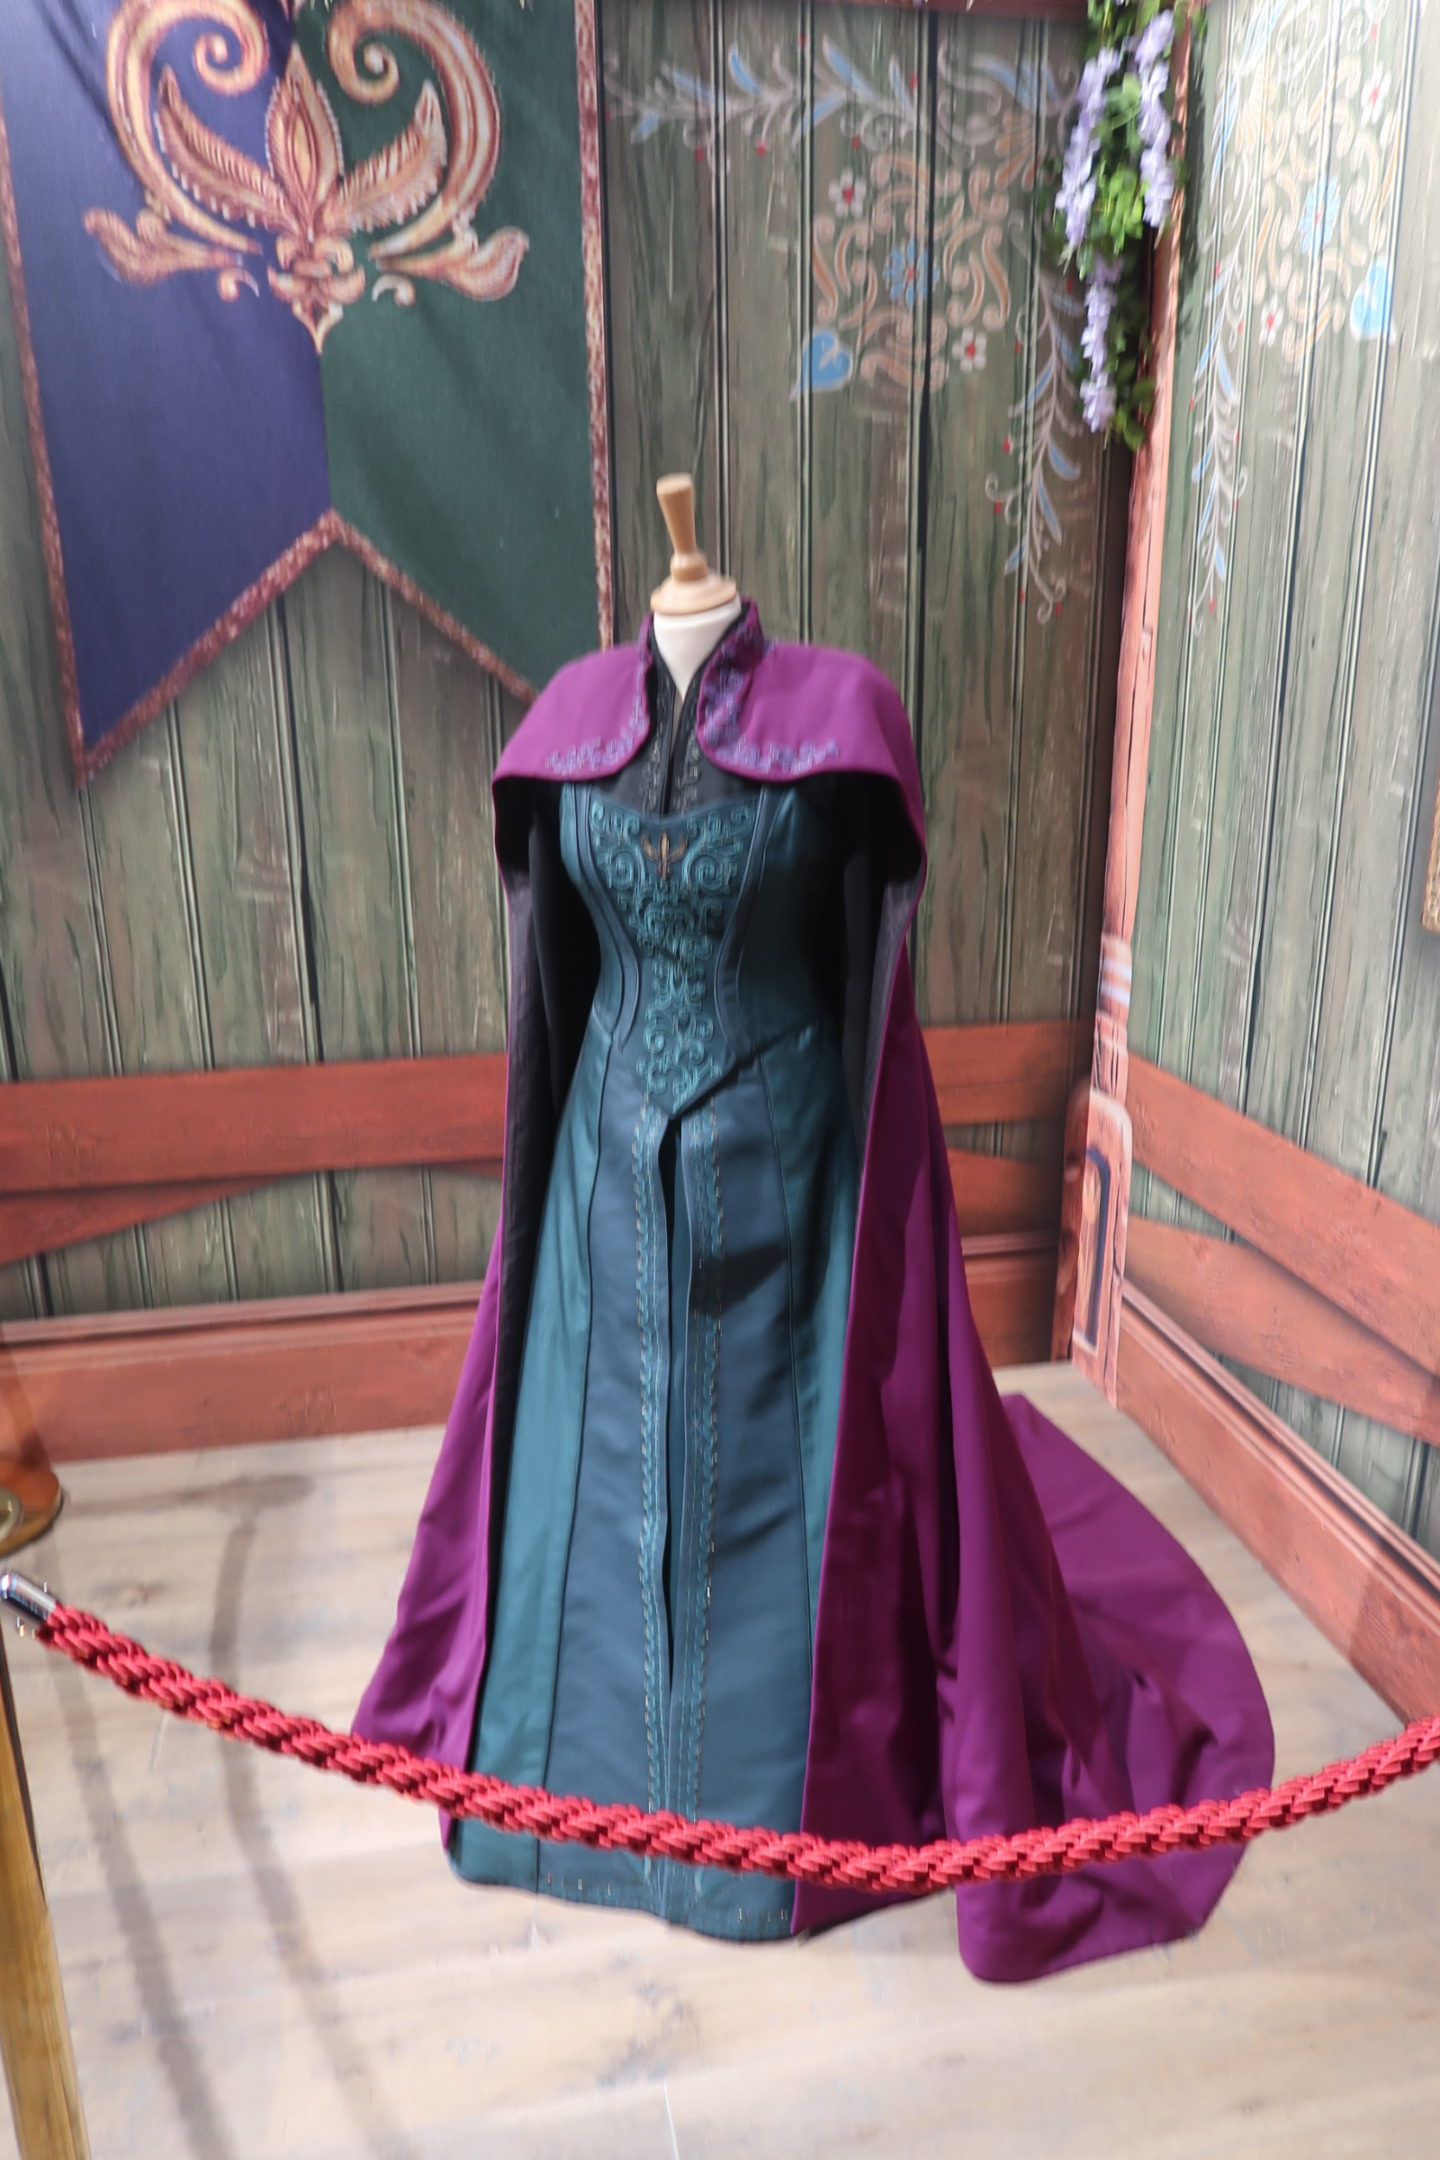 Elsa (from Frozen) coronation dress. 